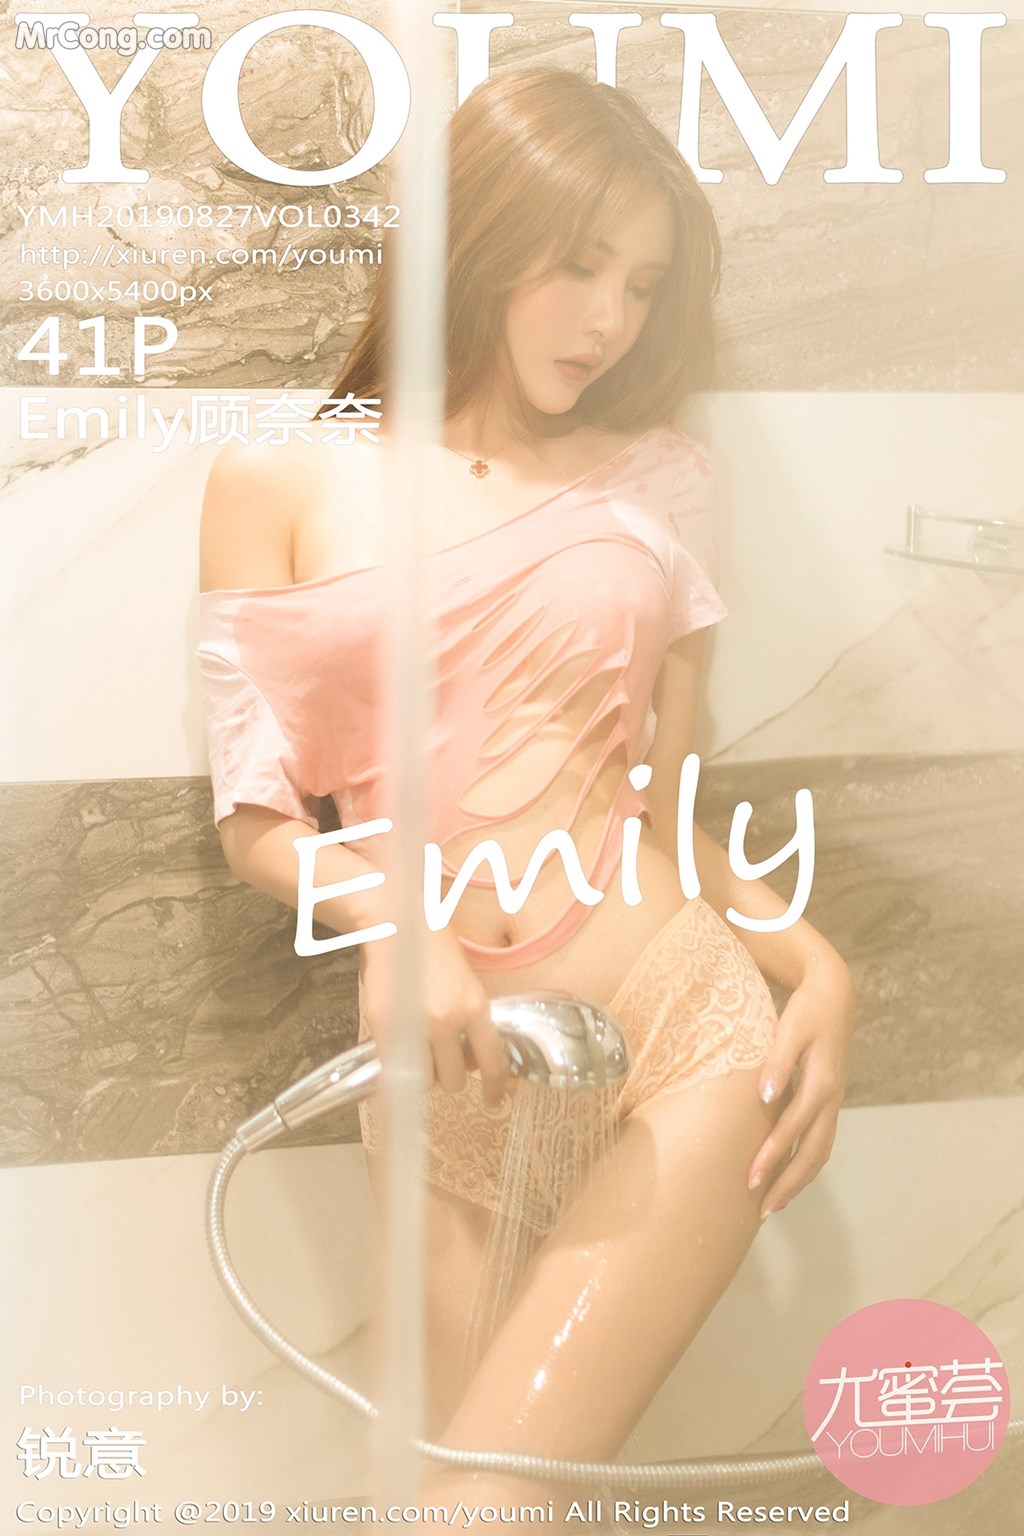 YouMi Vol.342: Emily 顾 奈奈 (42 pictures)